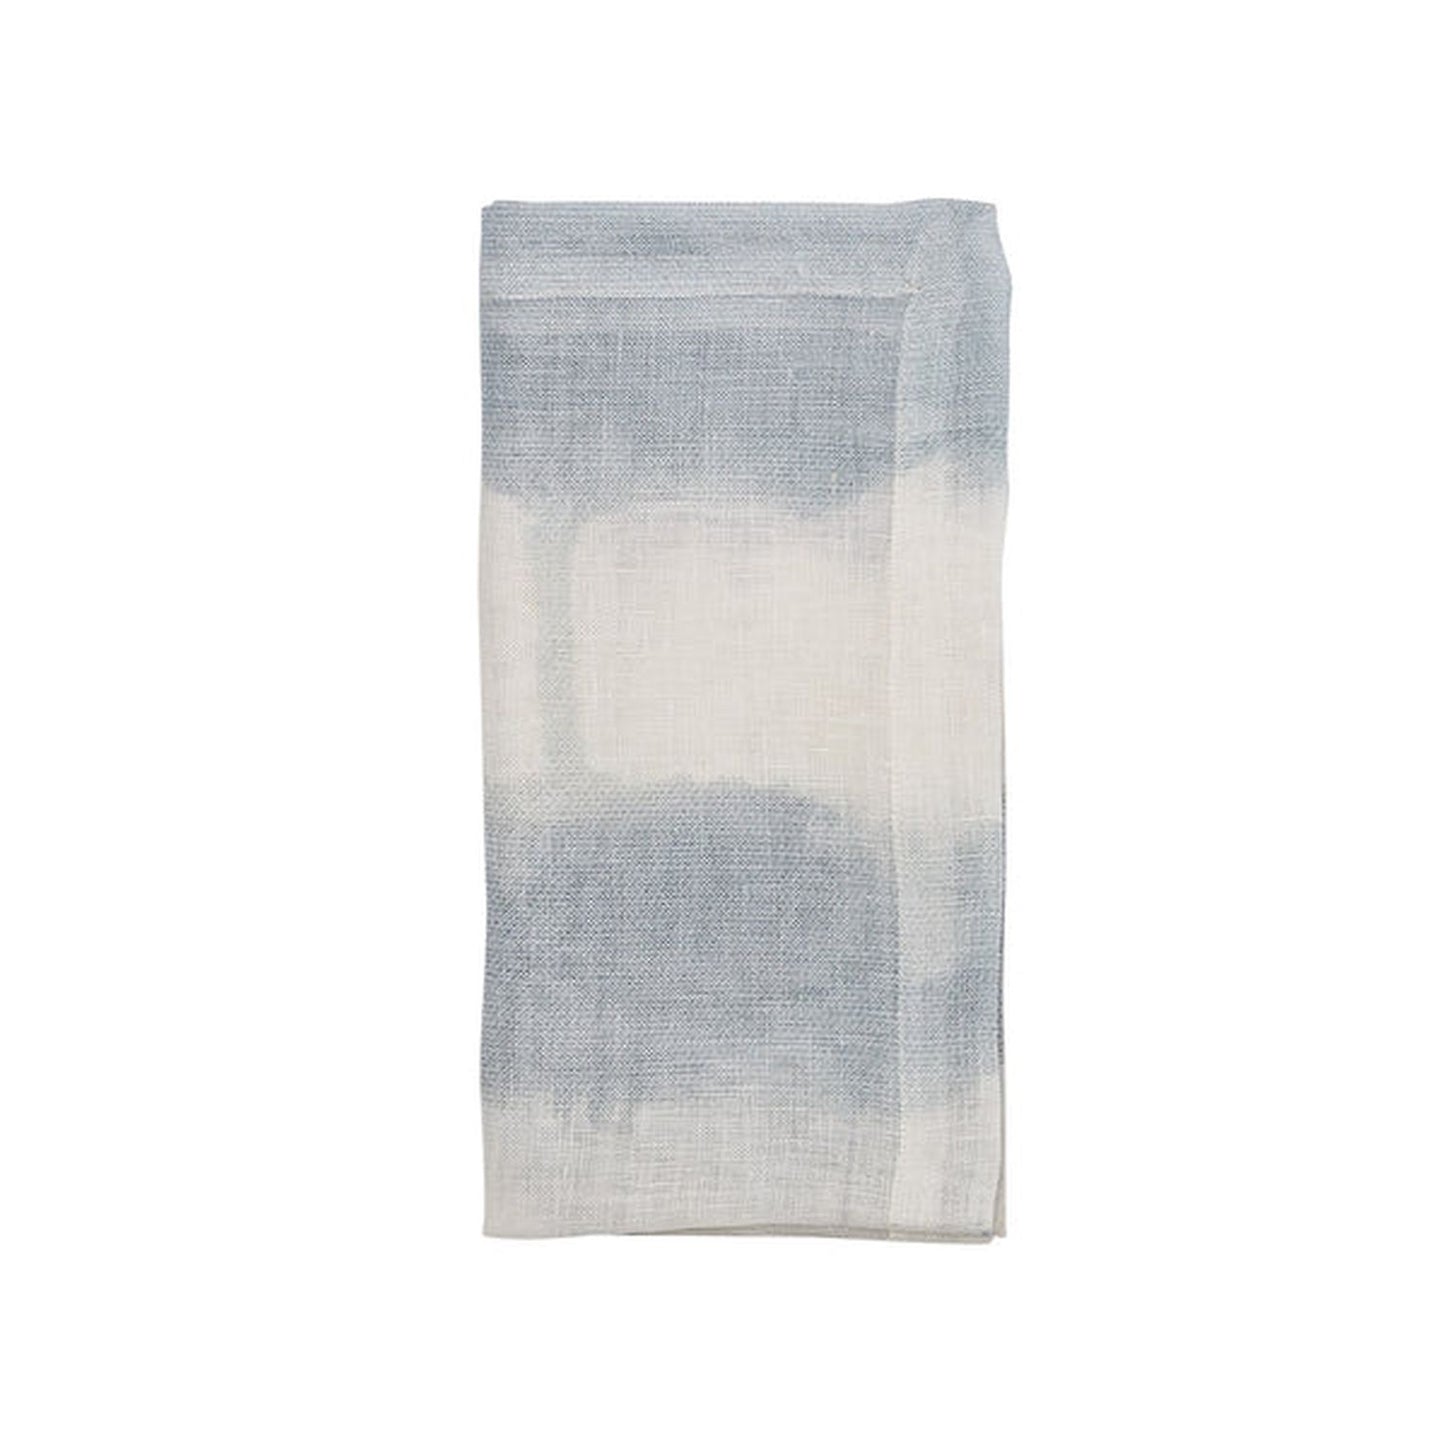 Kim Seybert Watercolor Stripe Napkin in White, Blue & Gray, Set of 4